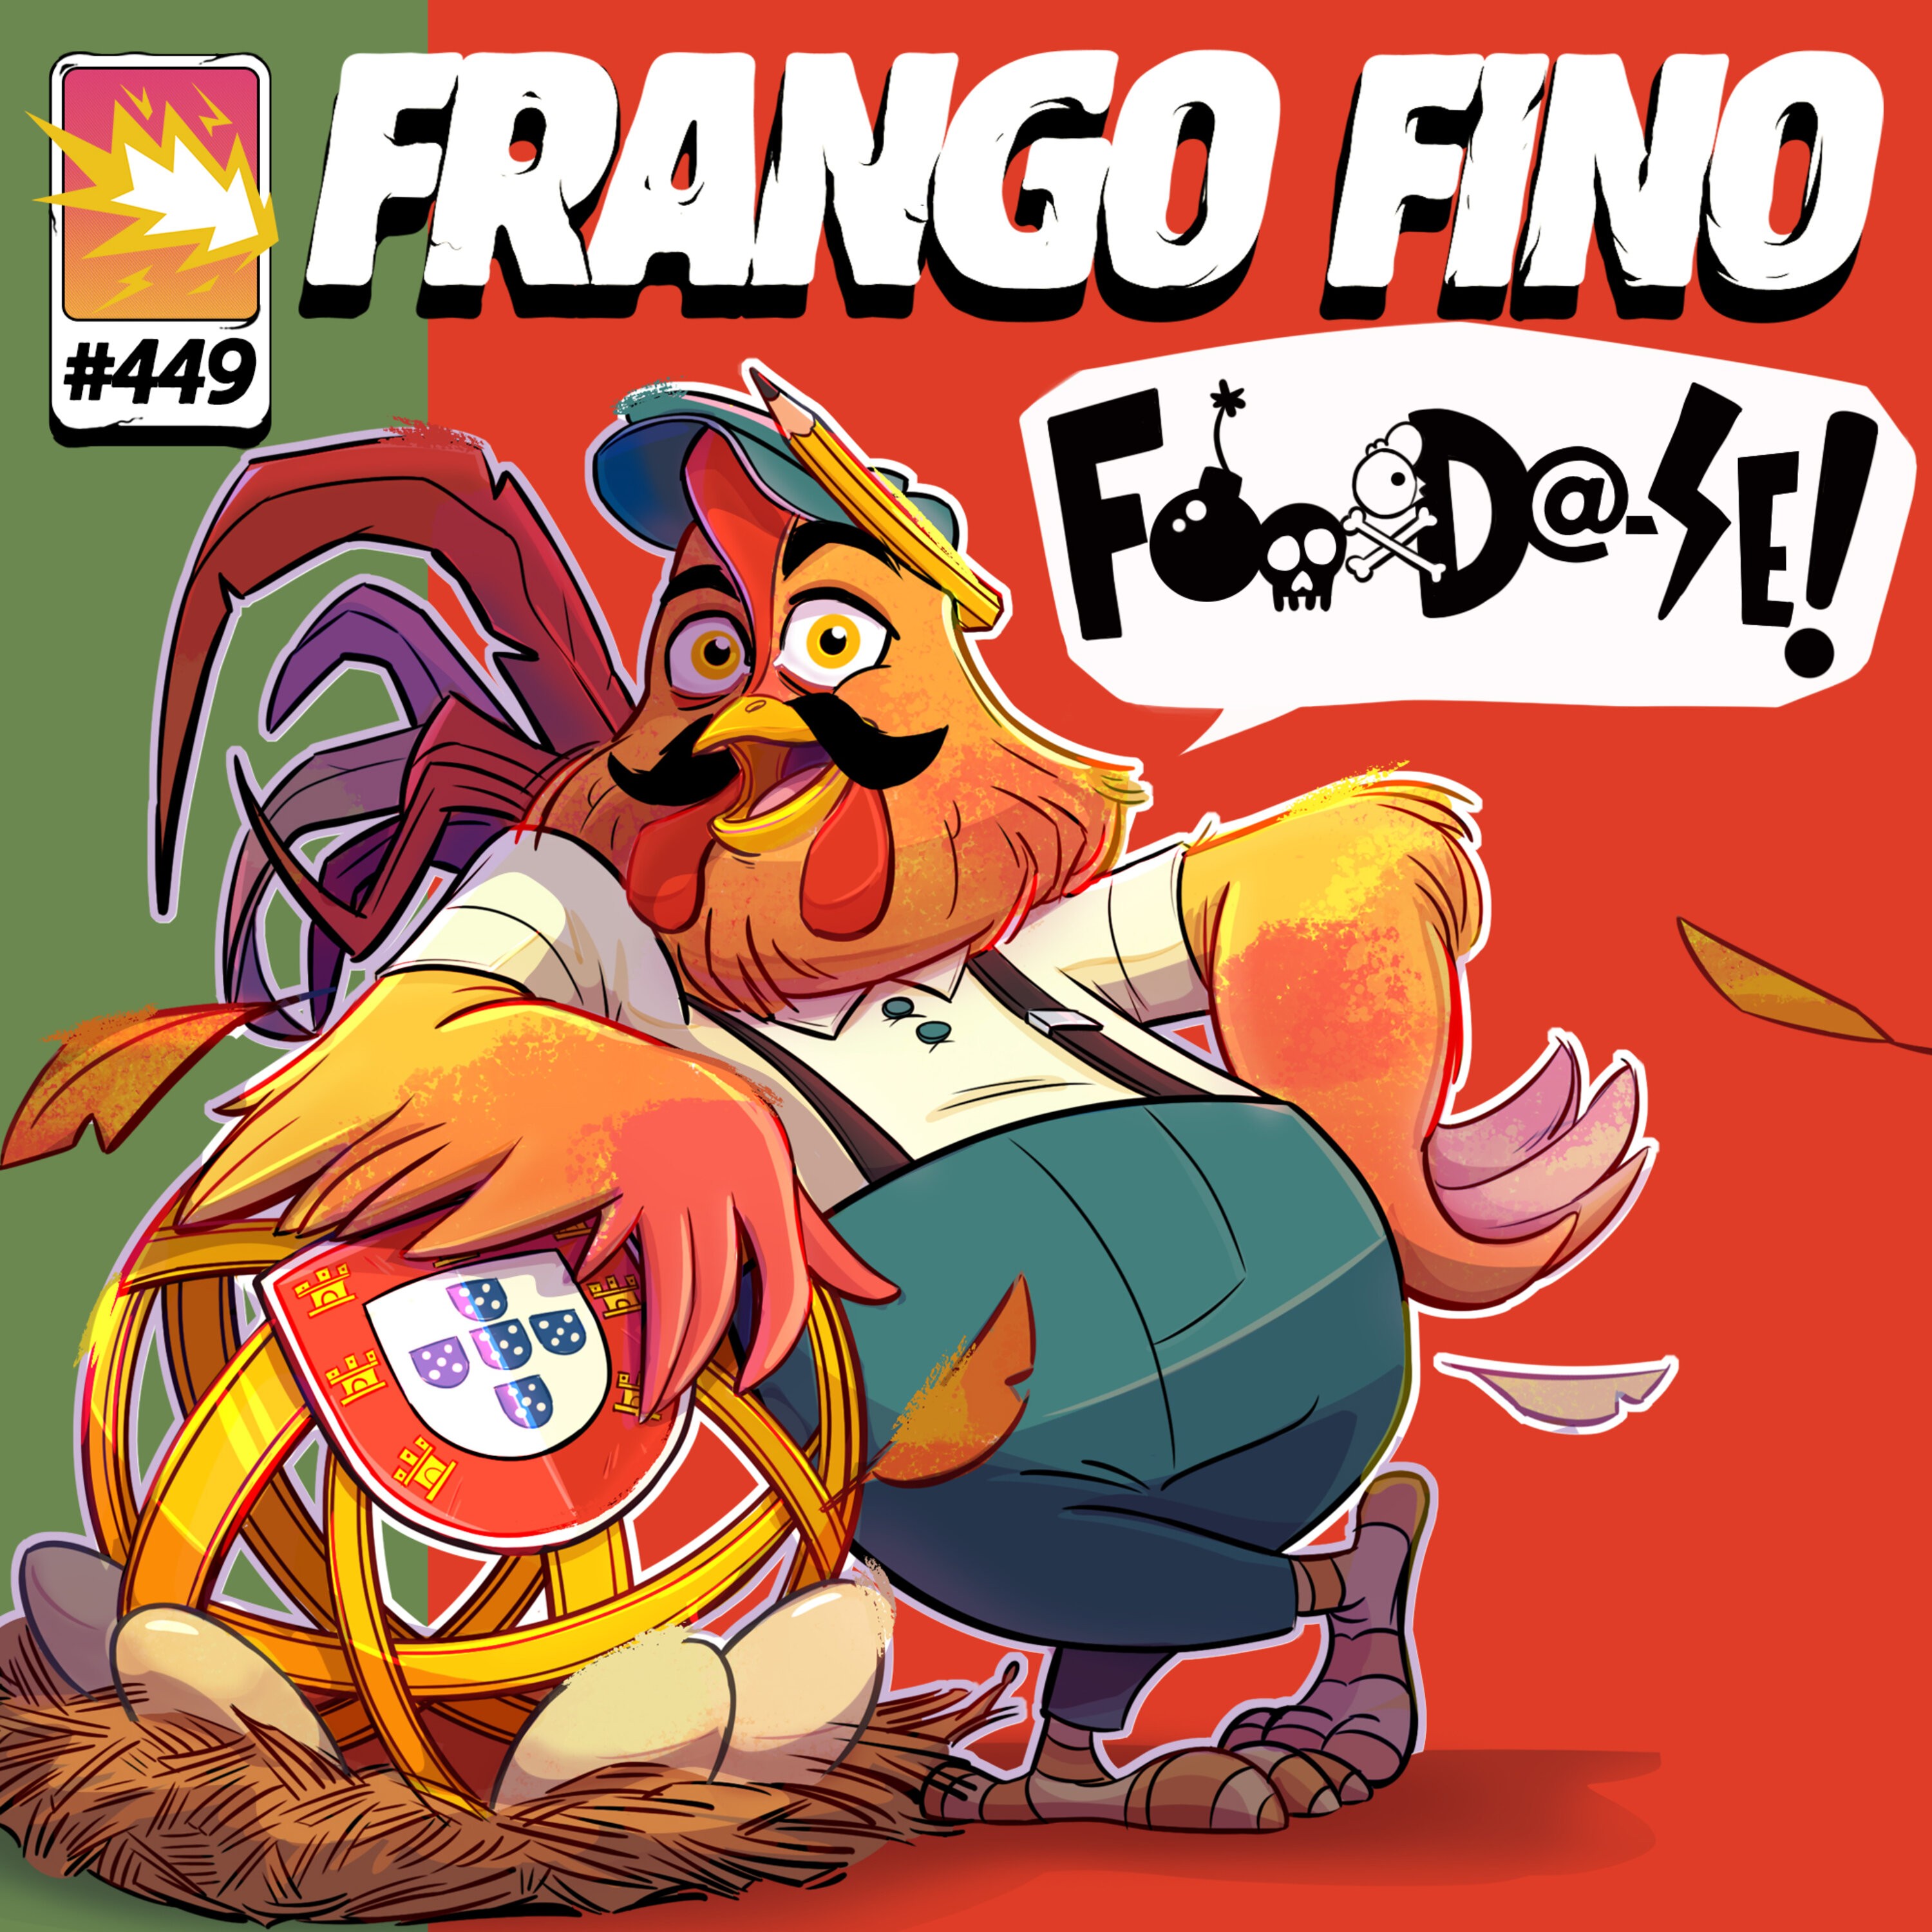 FRANGO FINO 449 | VENDE-SE GR!#$ NA FEIRA DA F&%*?